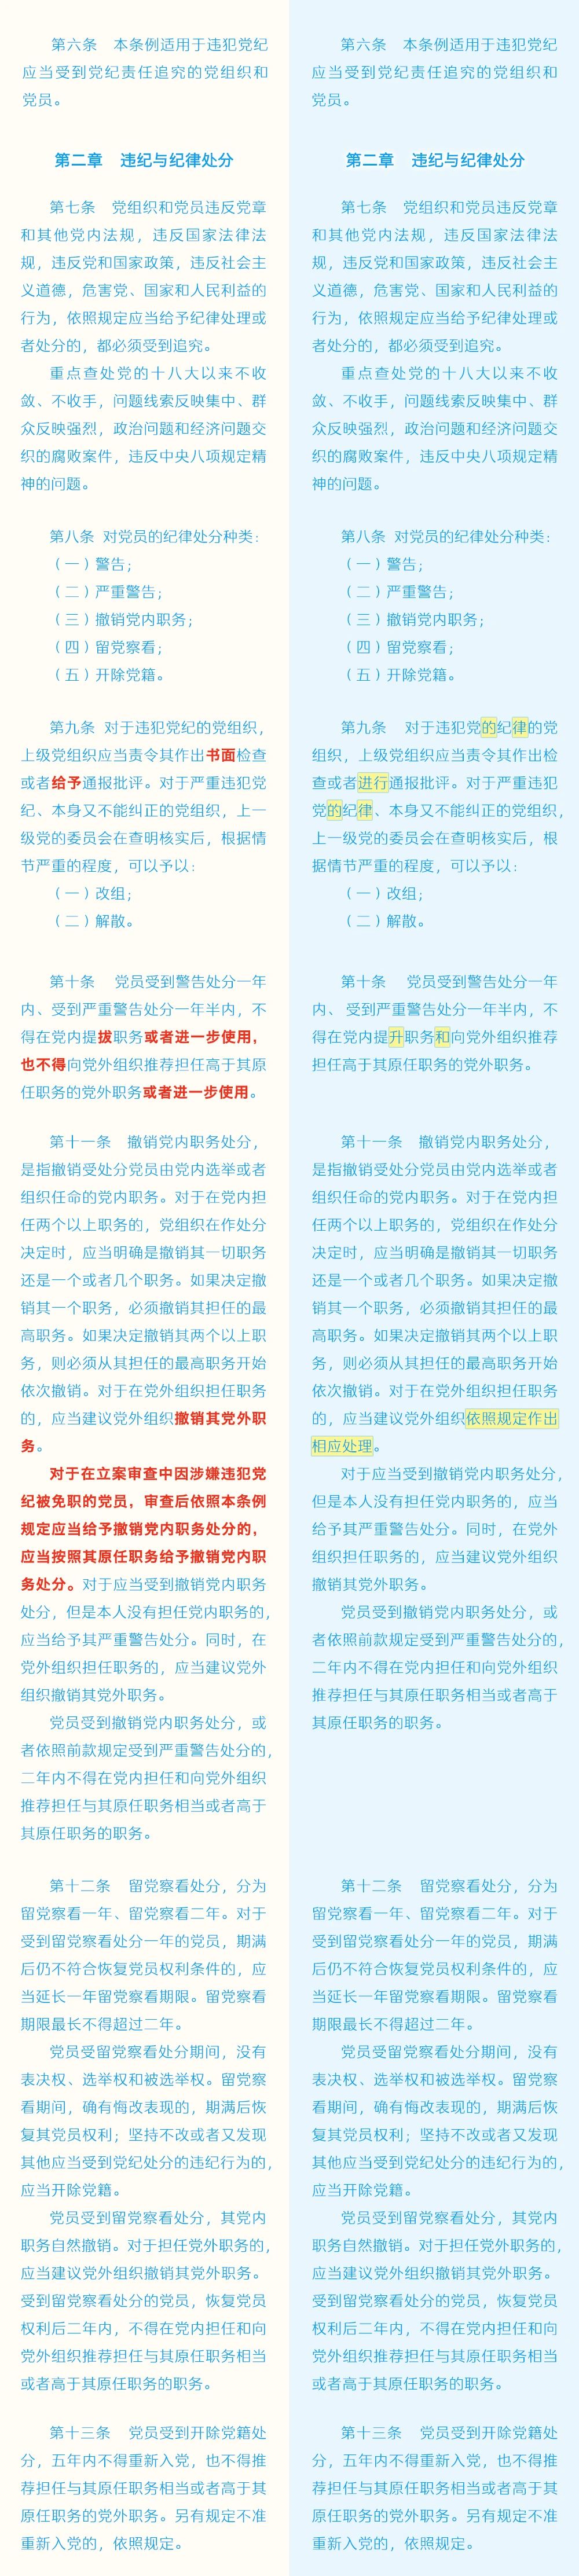 《中国共产党纪律处分条例》修订条文对照表